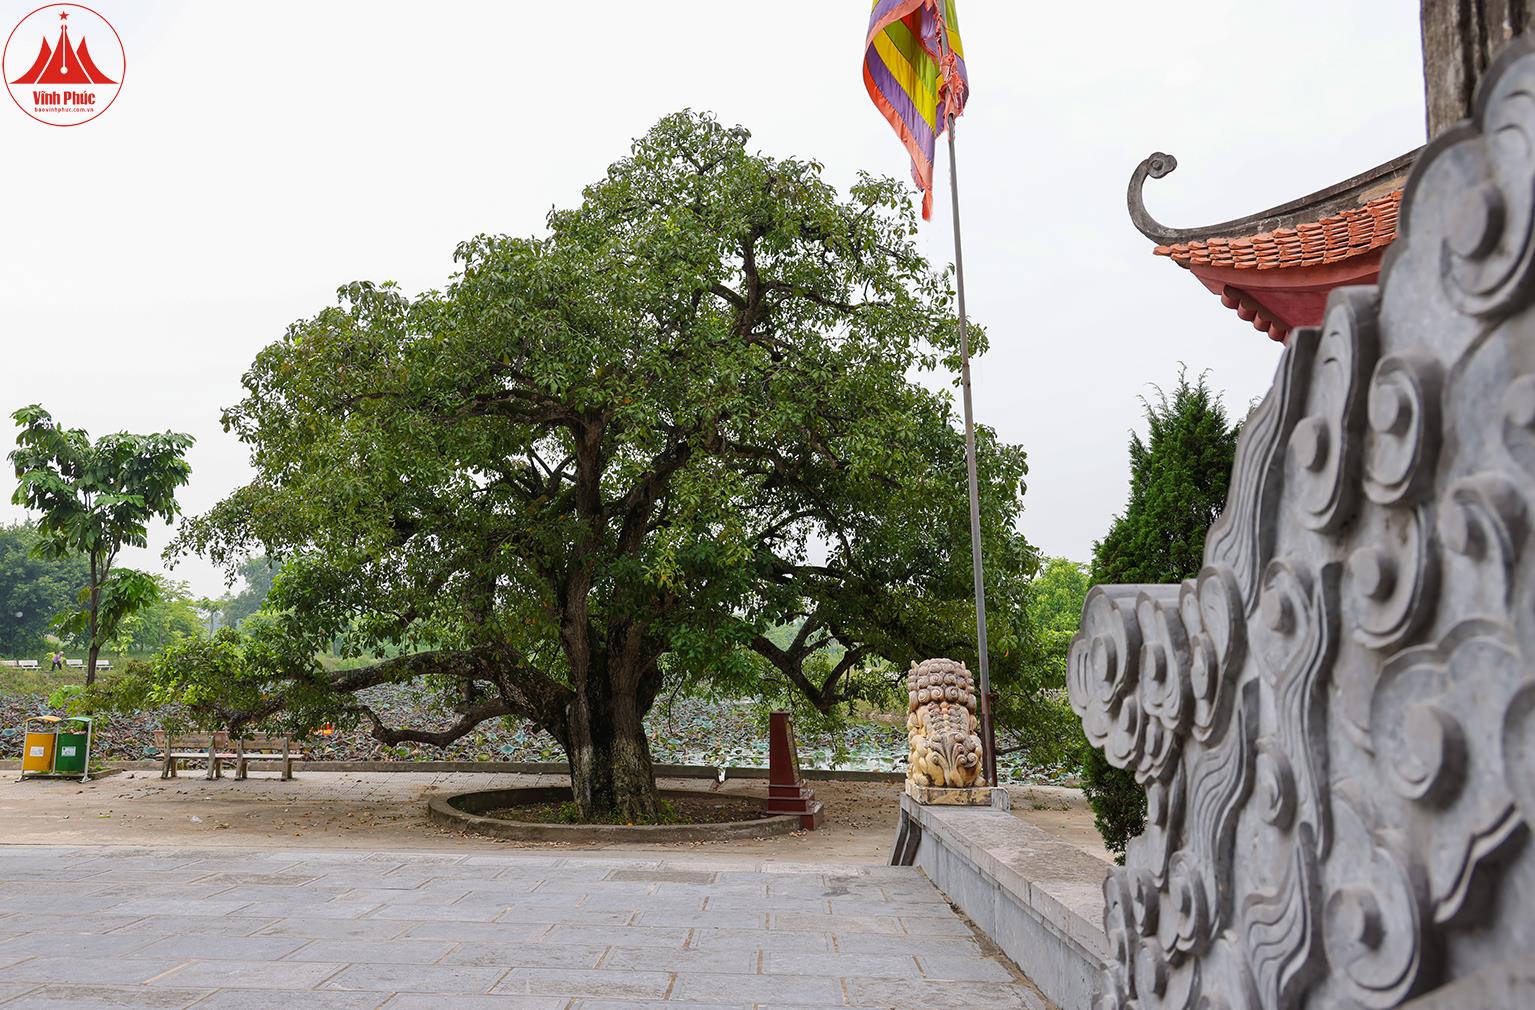 Điểm danh loạt cây cổ thụ ở các vùng đất cổ Vĩnh Phúc, hai cây gạo thọ 3 thế kỷ, cây lộc vừng 600 tuổi - Ảnh 3.